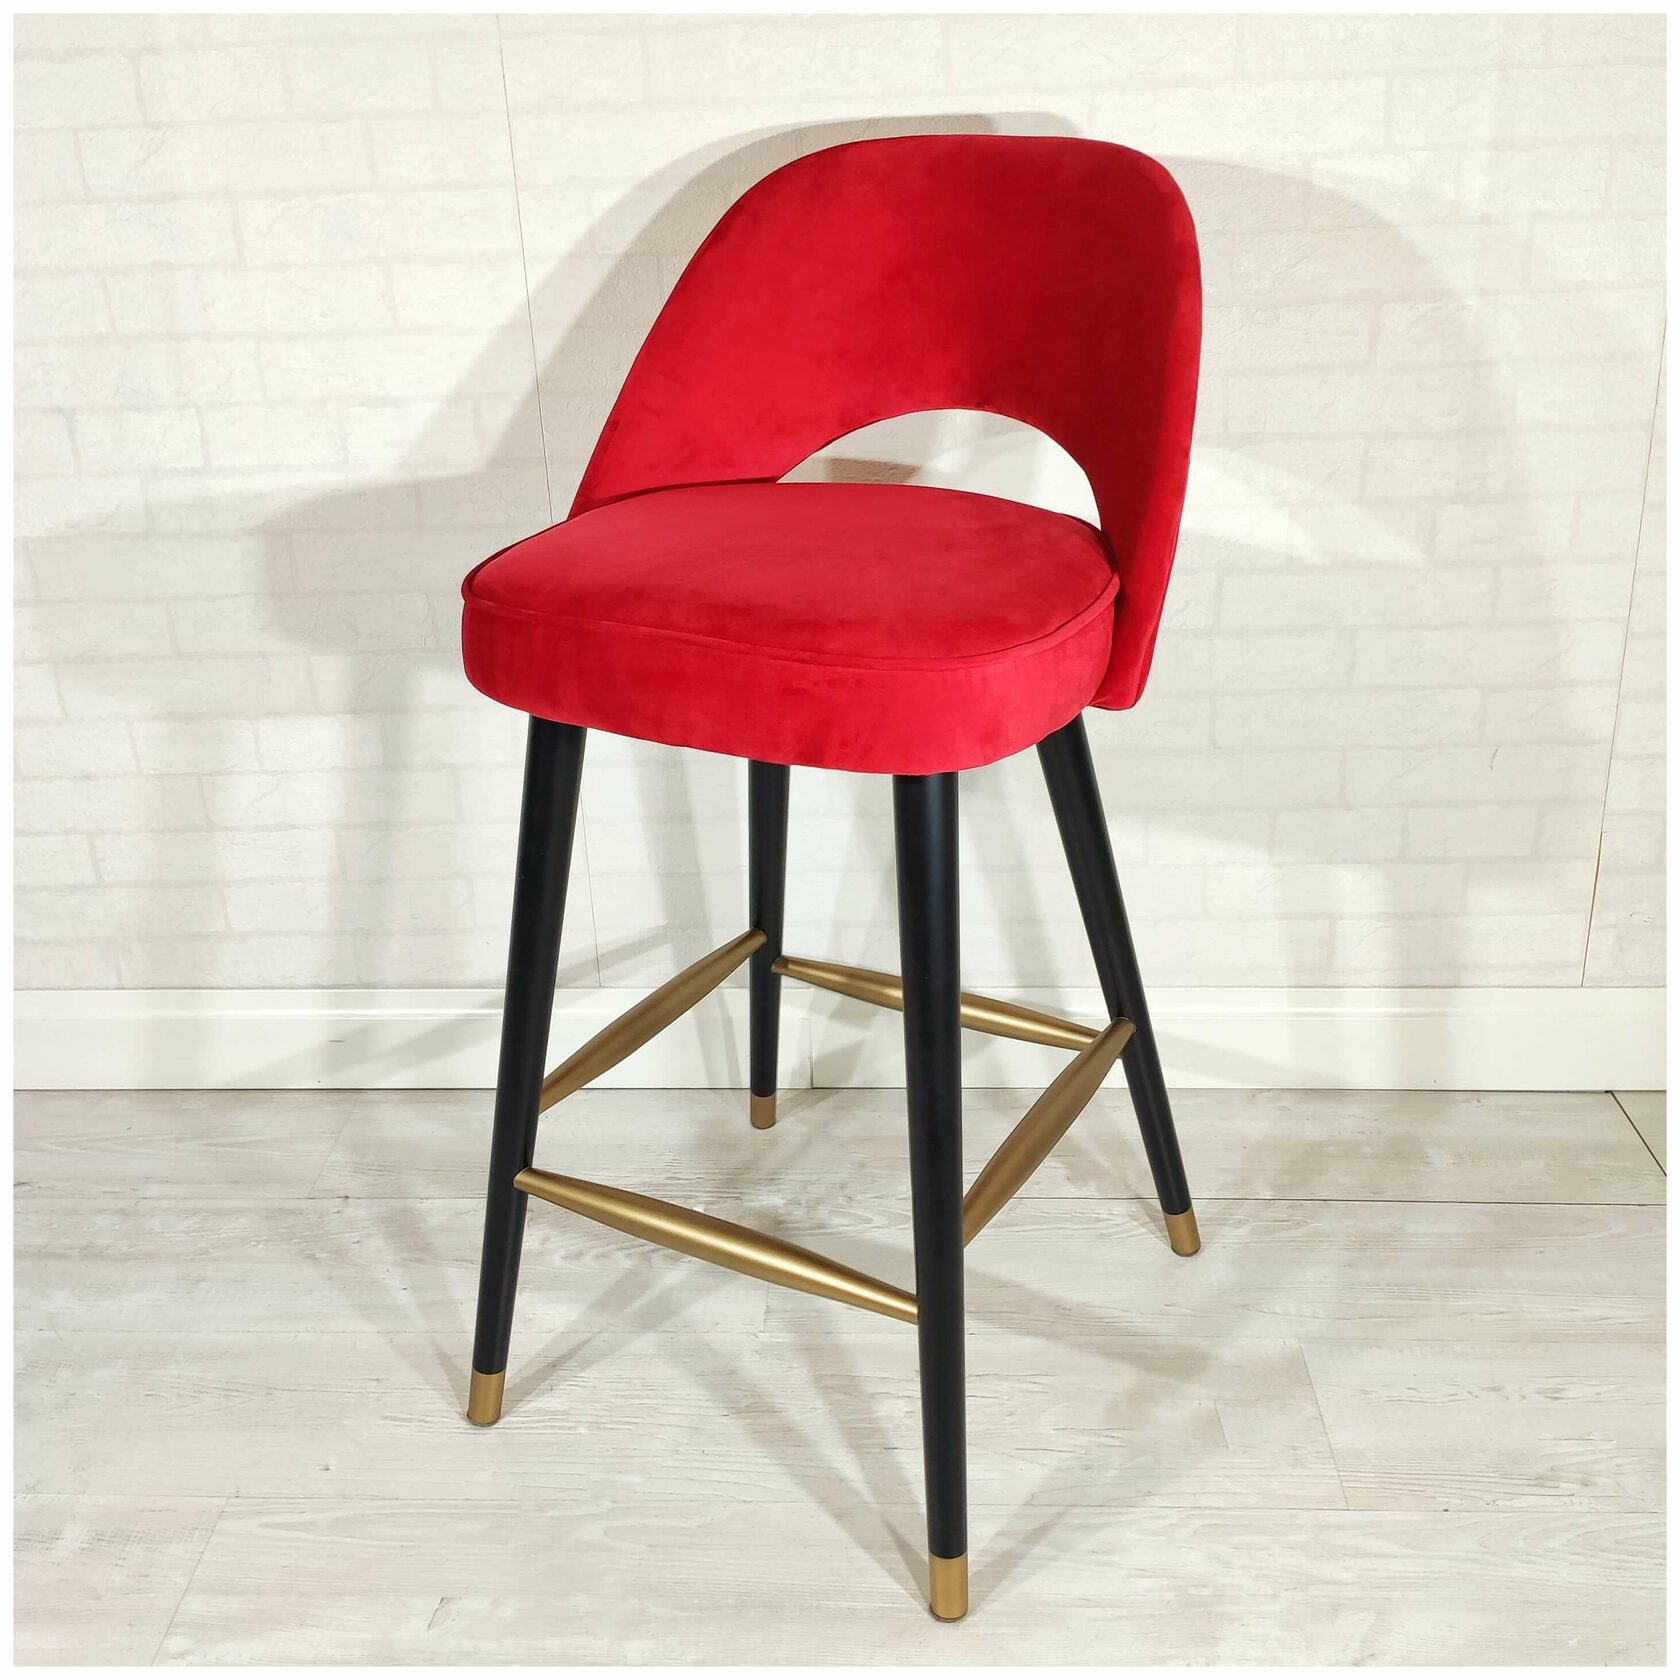 Дизайнерский барный стул Мирия на заказ в обивке из красного велюра на ножках из бука черного цвета с декоративной отделкой